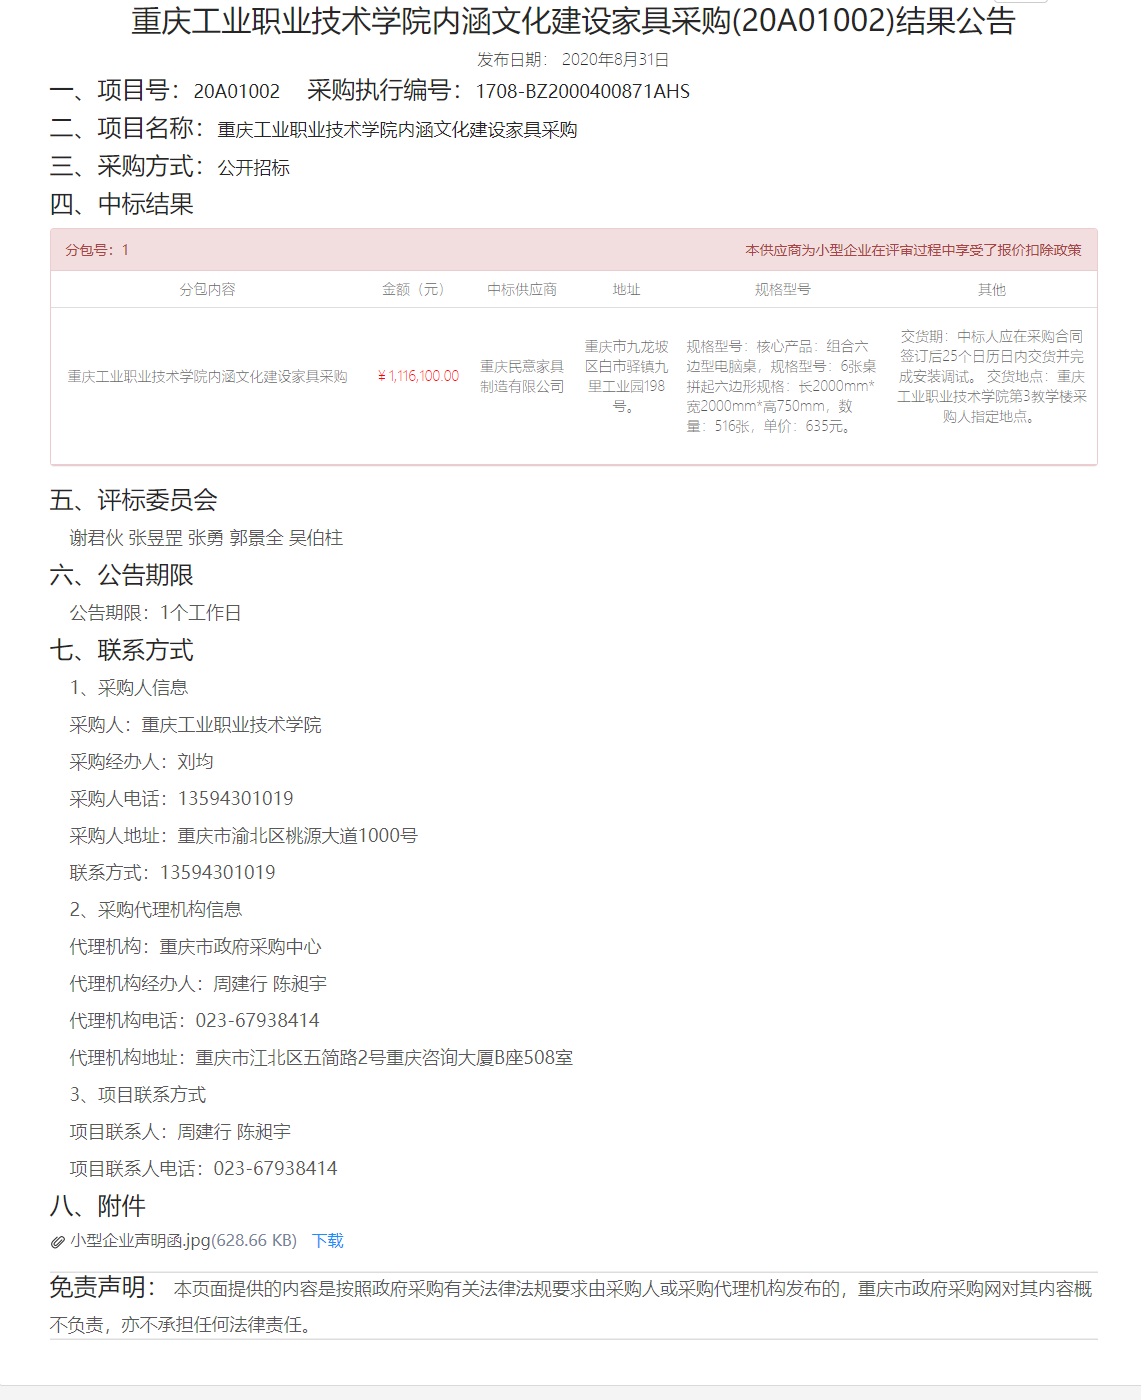 重庆工业职业技术学院内涵文化建设家具采购(20A01002)结果公告.png